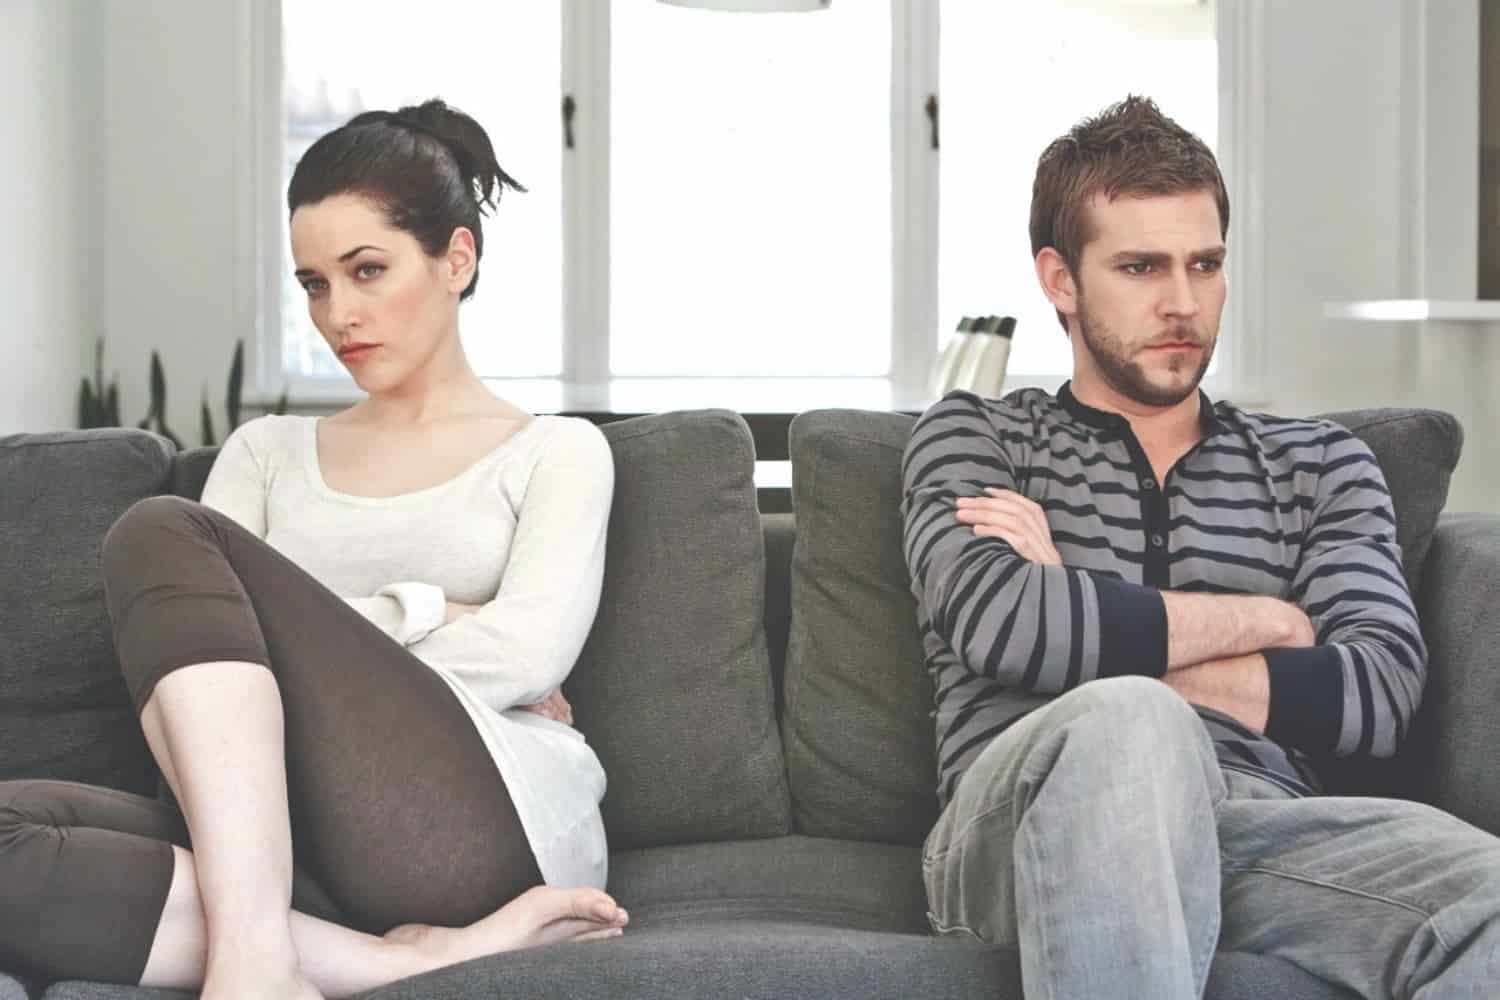 Mala comunicación con tu pareja? Sigue estos consejos